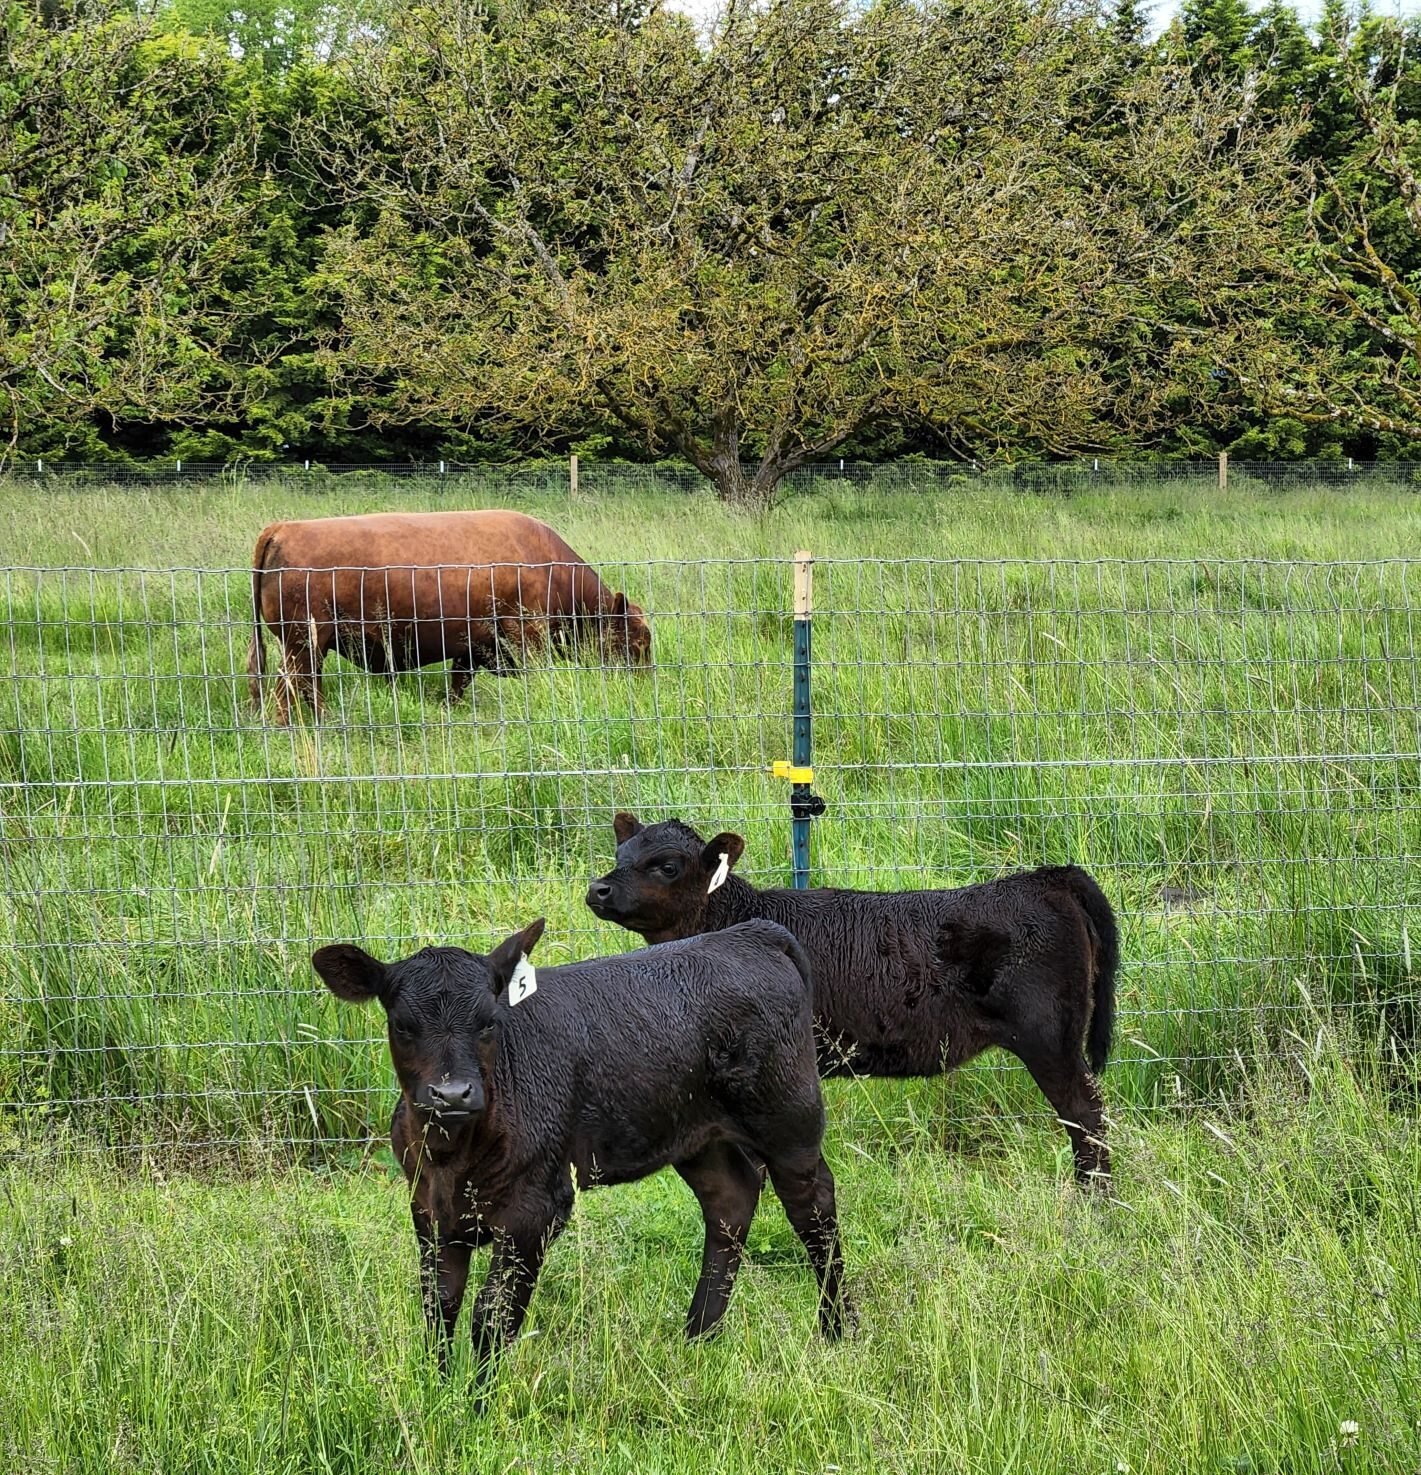 American Aberdeen calves with American Aberdeen bull